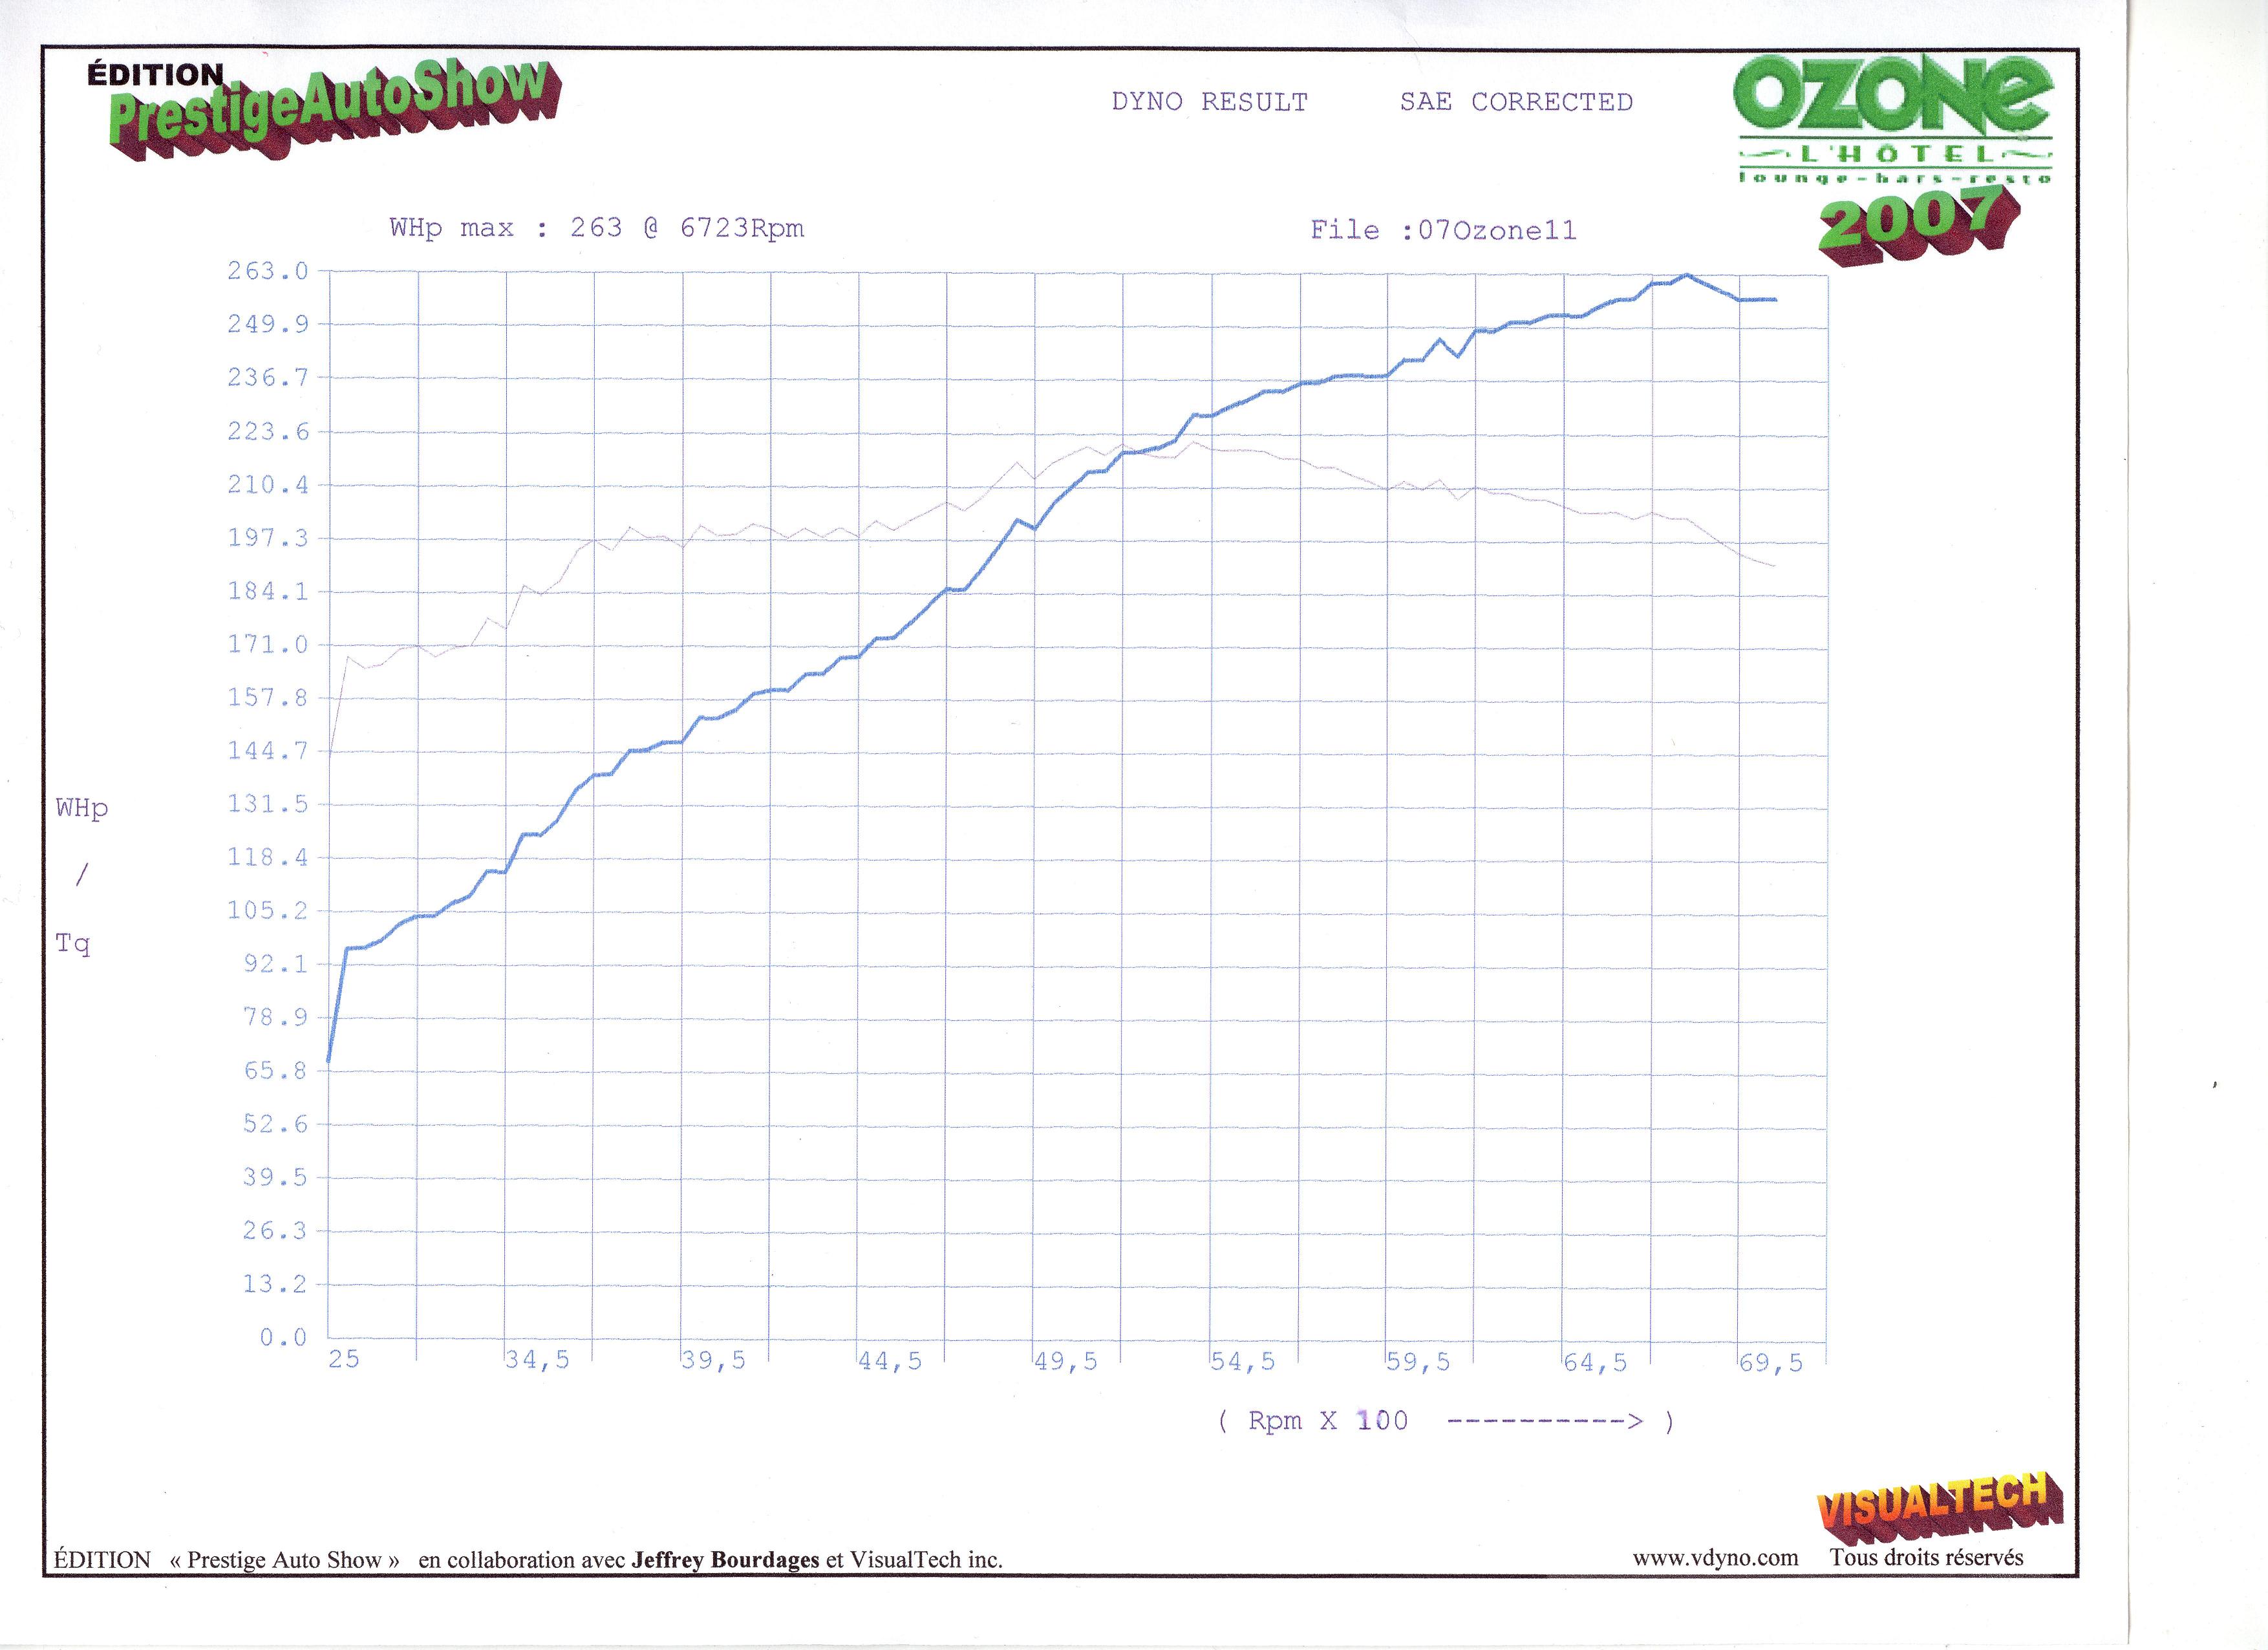 Nissan Altima Dyno Graph Results